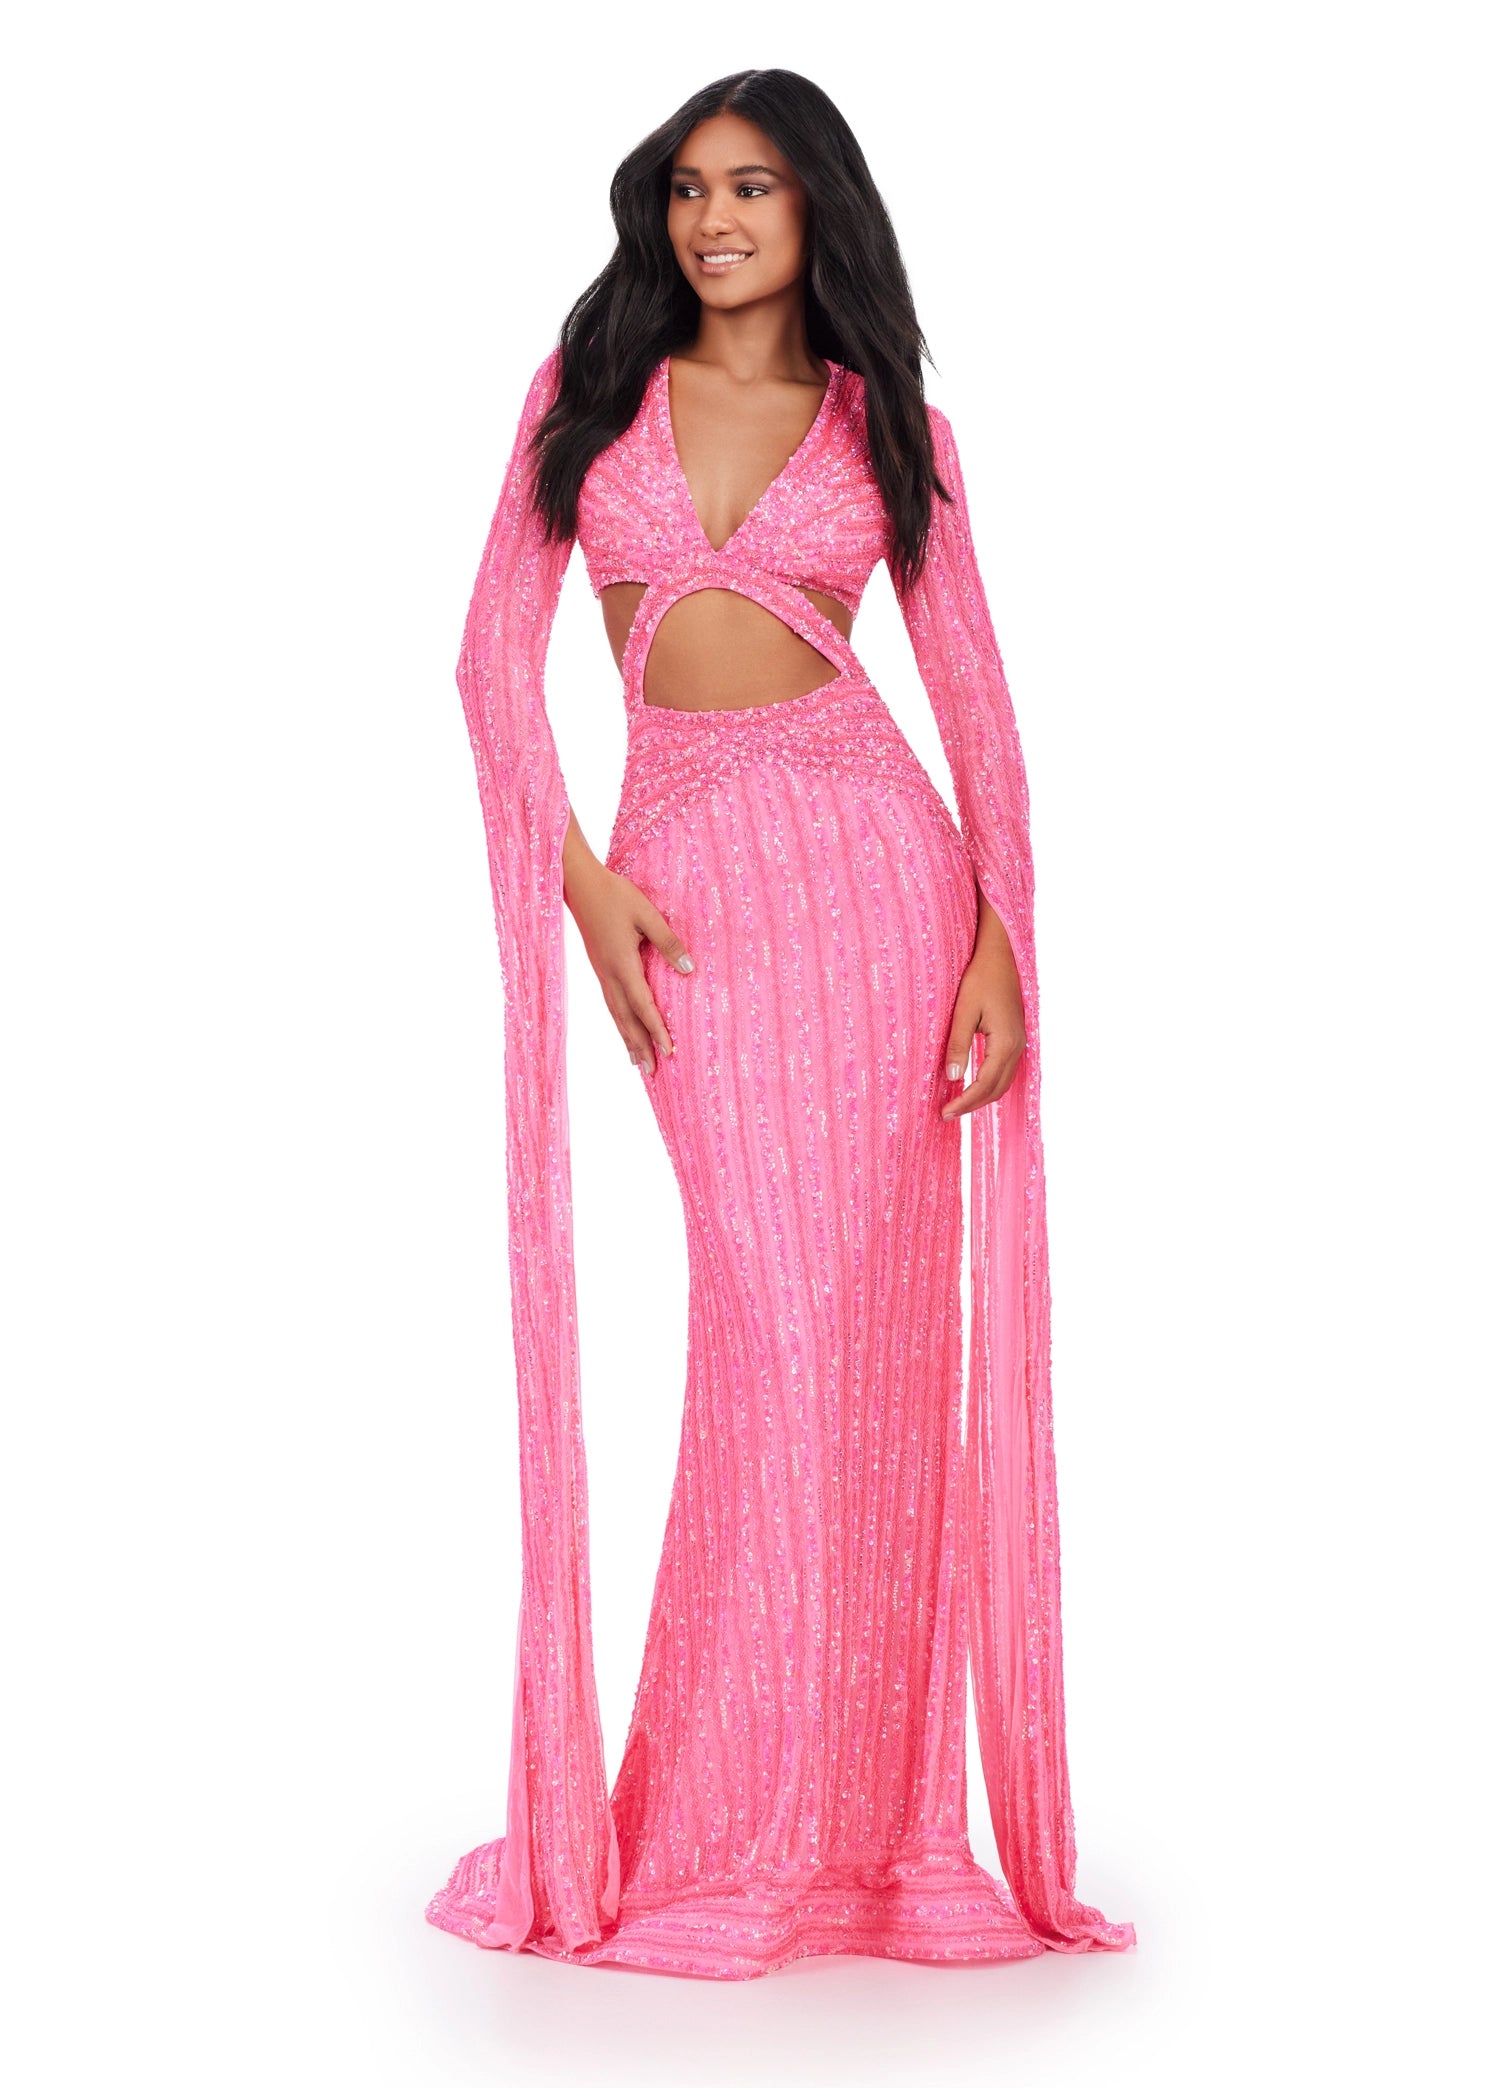 Amarra 88609 Shimmer Ballgown Sheer Lace Corset Backless Prom Dress Pockets  V Neck